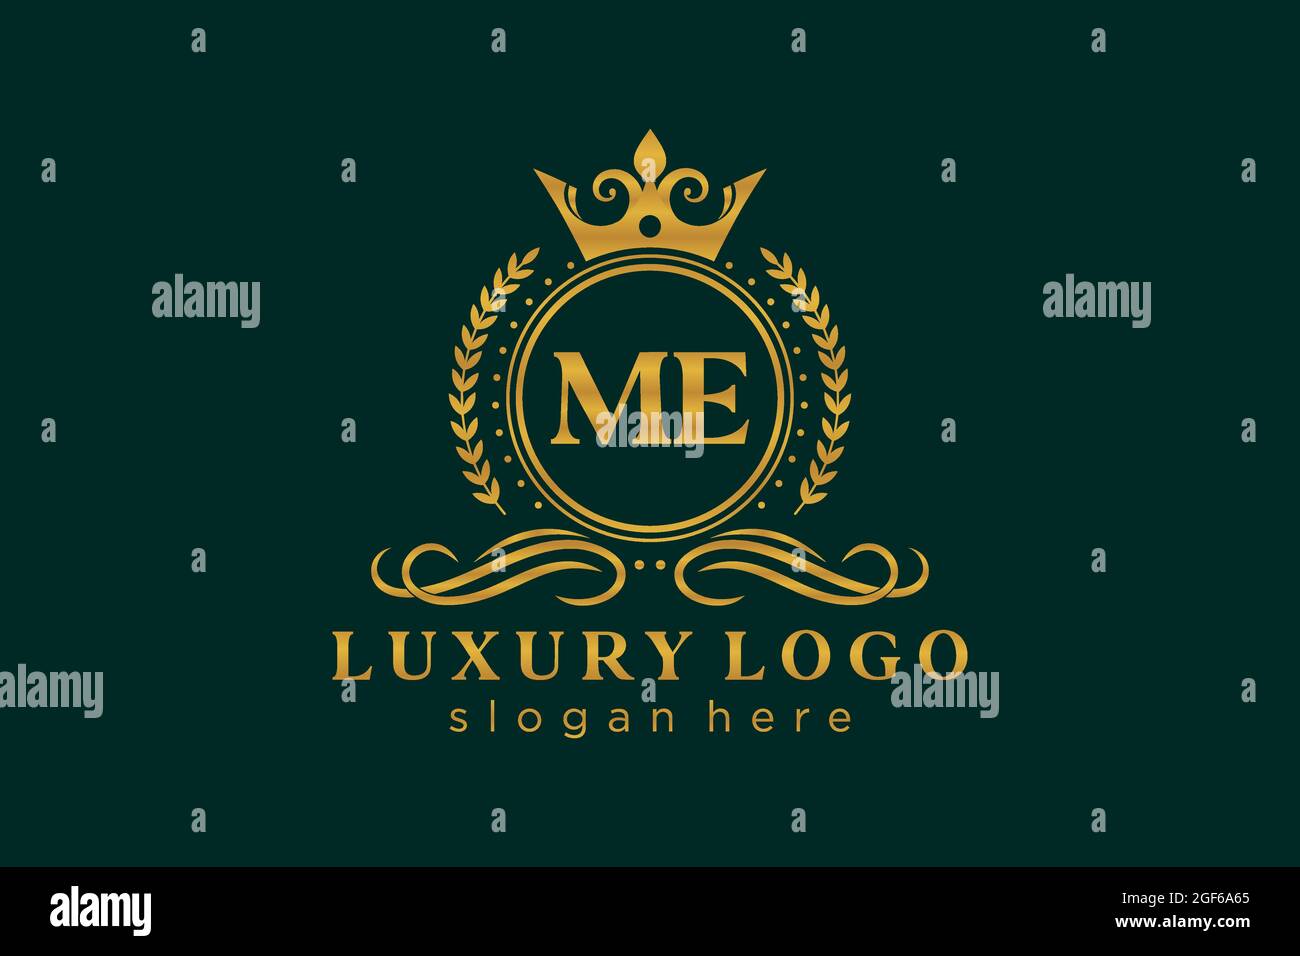 ME Letter Royal Luxury Logo Vorlage in Vektorgrafik für Restaurant, Royalty, Boutique, Cafe, Hotel, Heraldisch, Schmuck, Mode und andere Vektor illustrr Stock Vektor